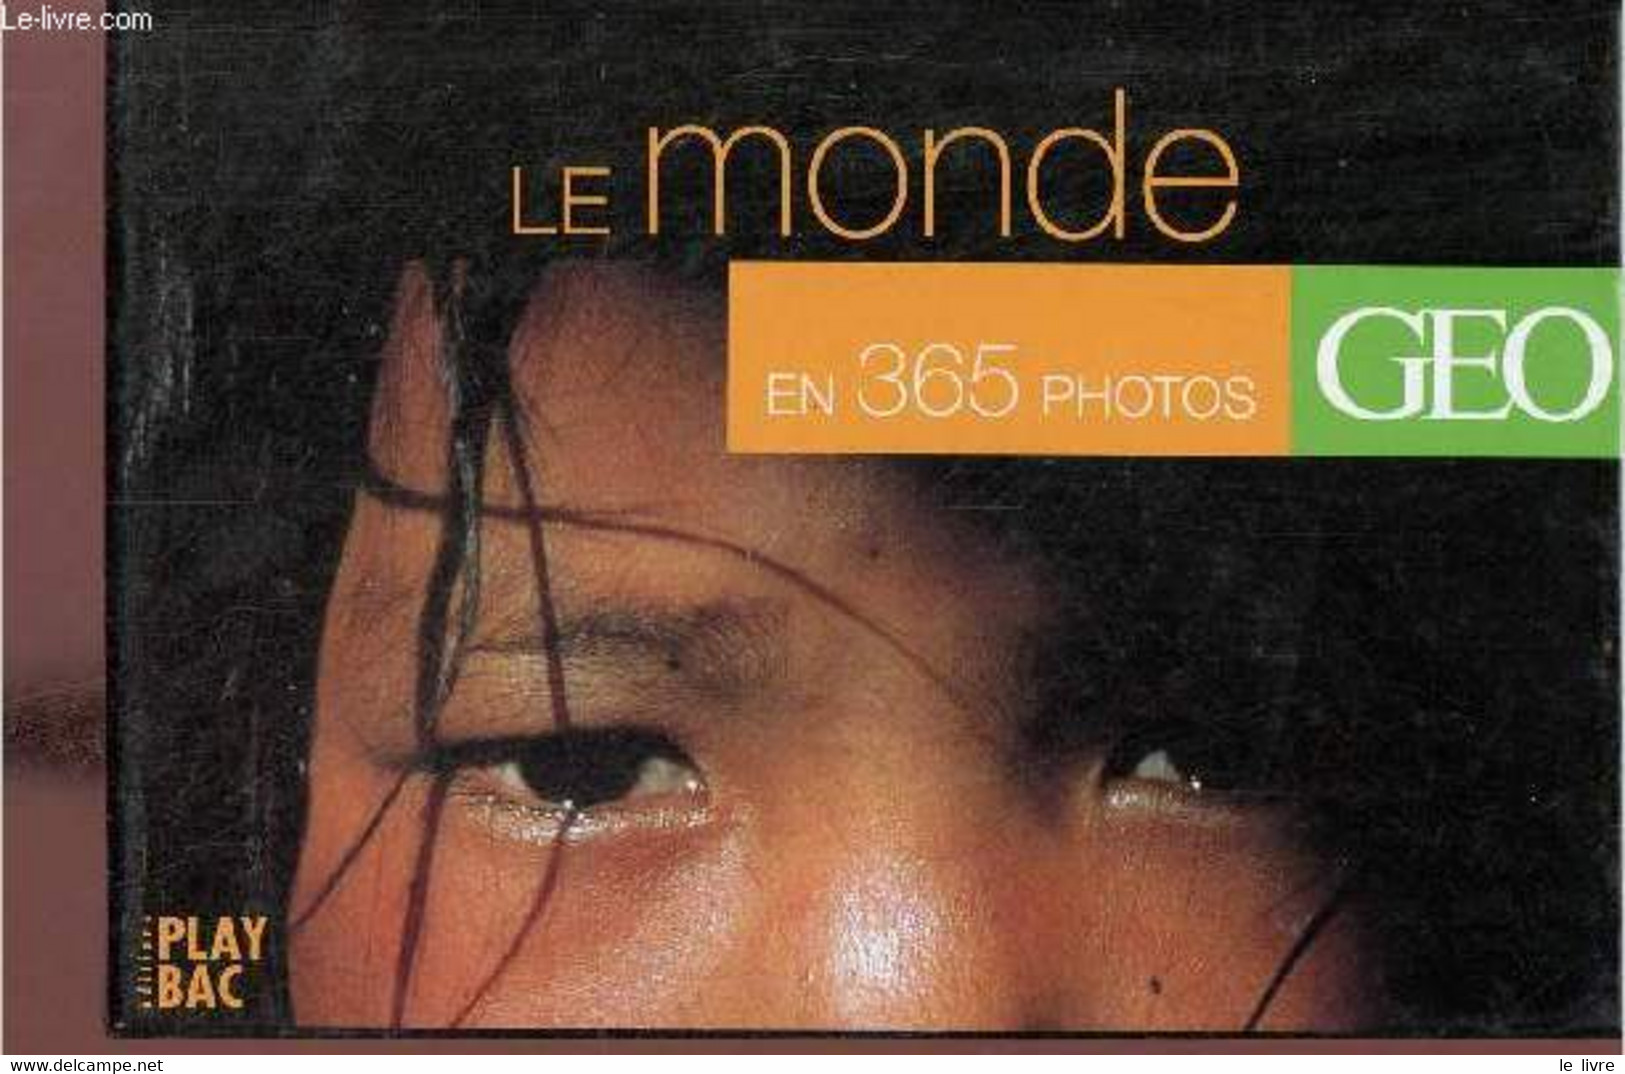 Le Monde En 365 Photos - Geo. - Collectif - 2001 - Diaries